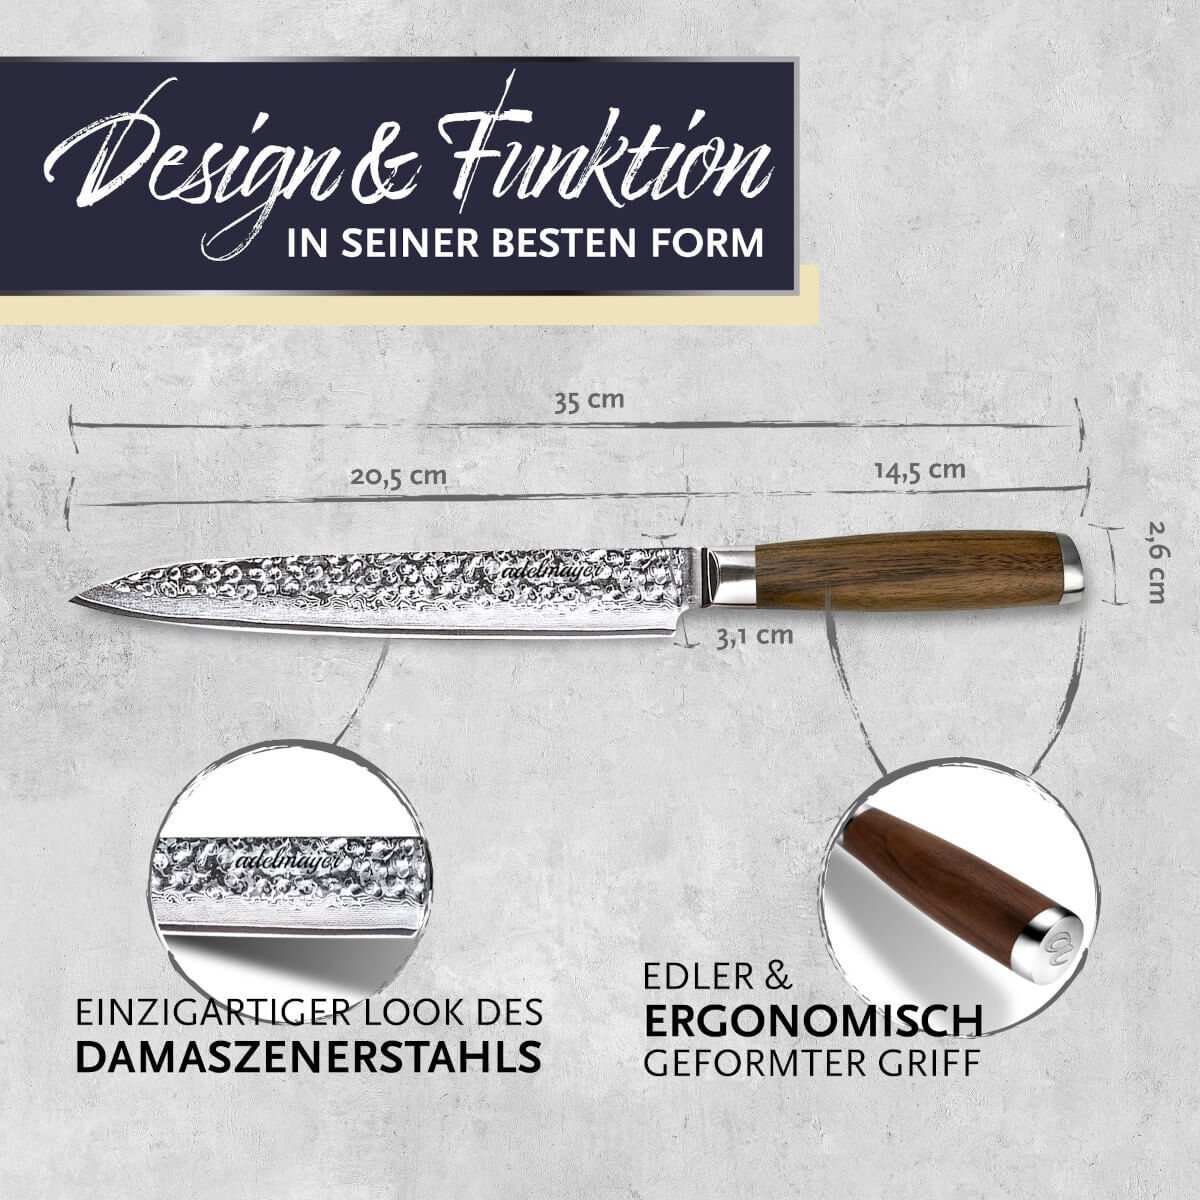 adelmayer Damastmesser Filetiermesser | 20,5 cm handgeschliffen | mit Walnussgriff